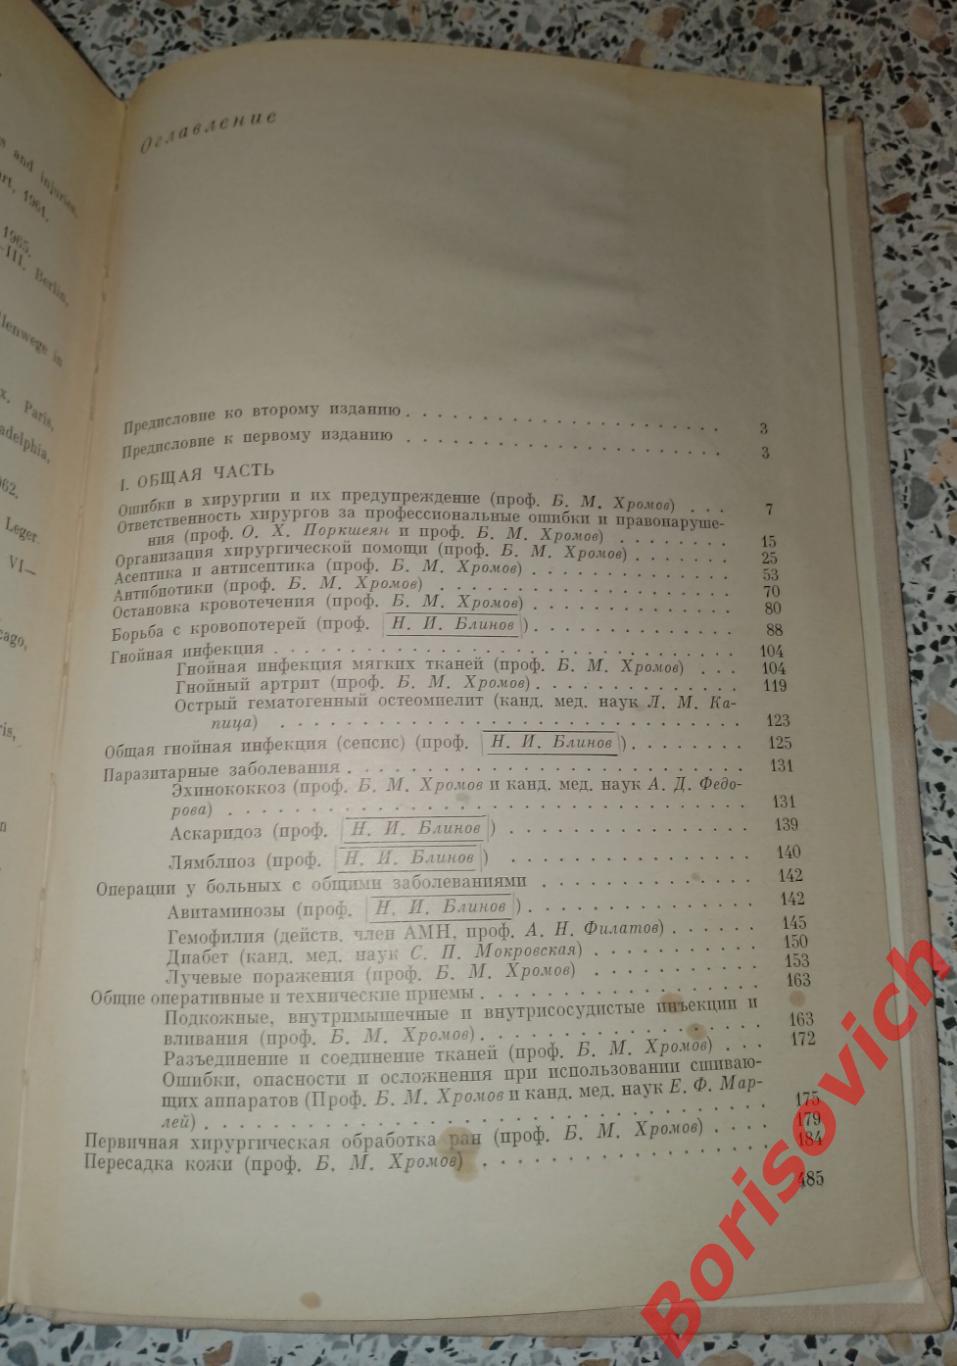 ОШИБКИ, ОПАСНОСТИ И ОСЛОЖНЕНИЯ В ХИРУРГИИ 1972 г 488 страниц Тираж 15 000 экз 2